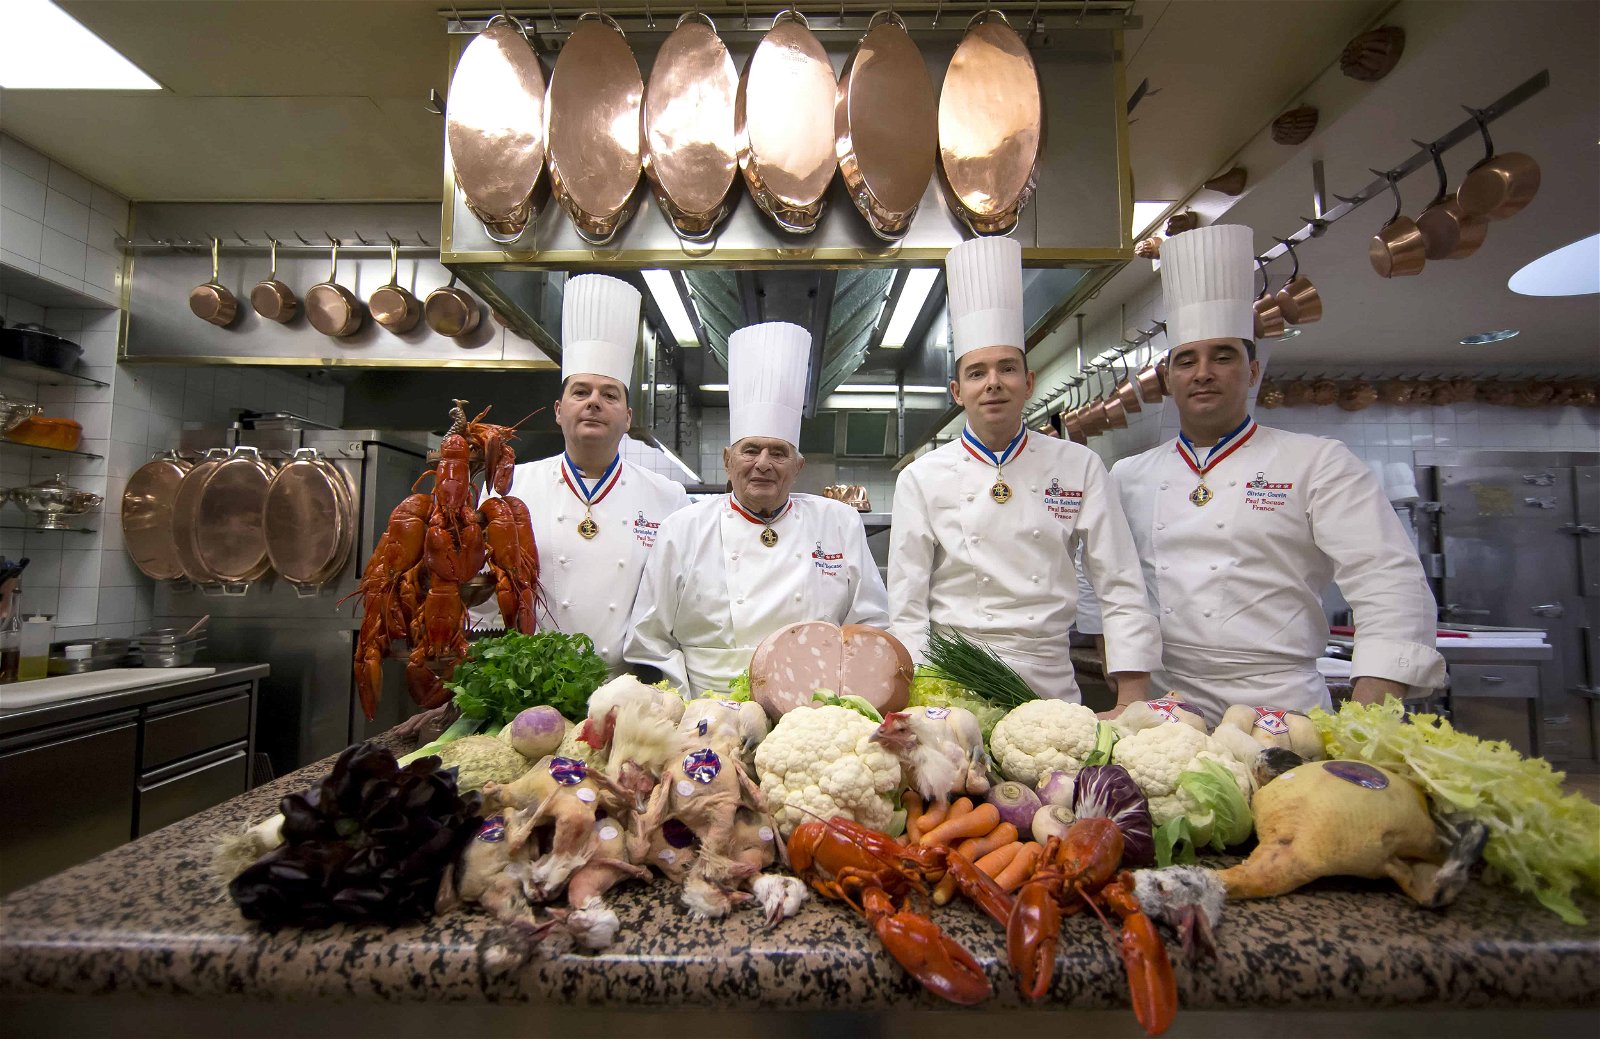 Vier koks in wit pak met hoge hoed poseren achter een kreeft en andere voedsel in de keuken.